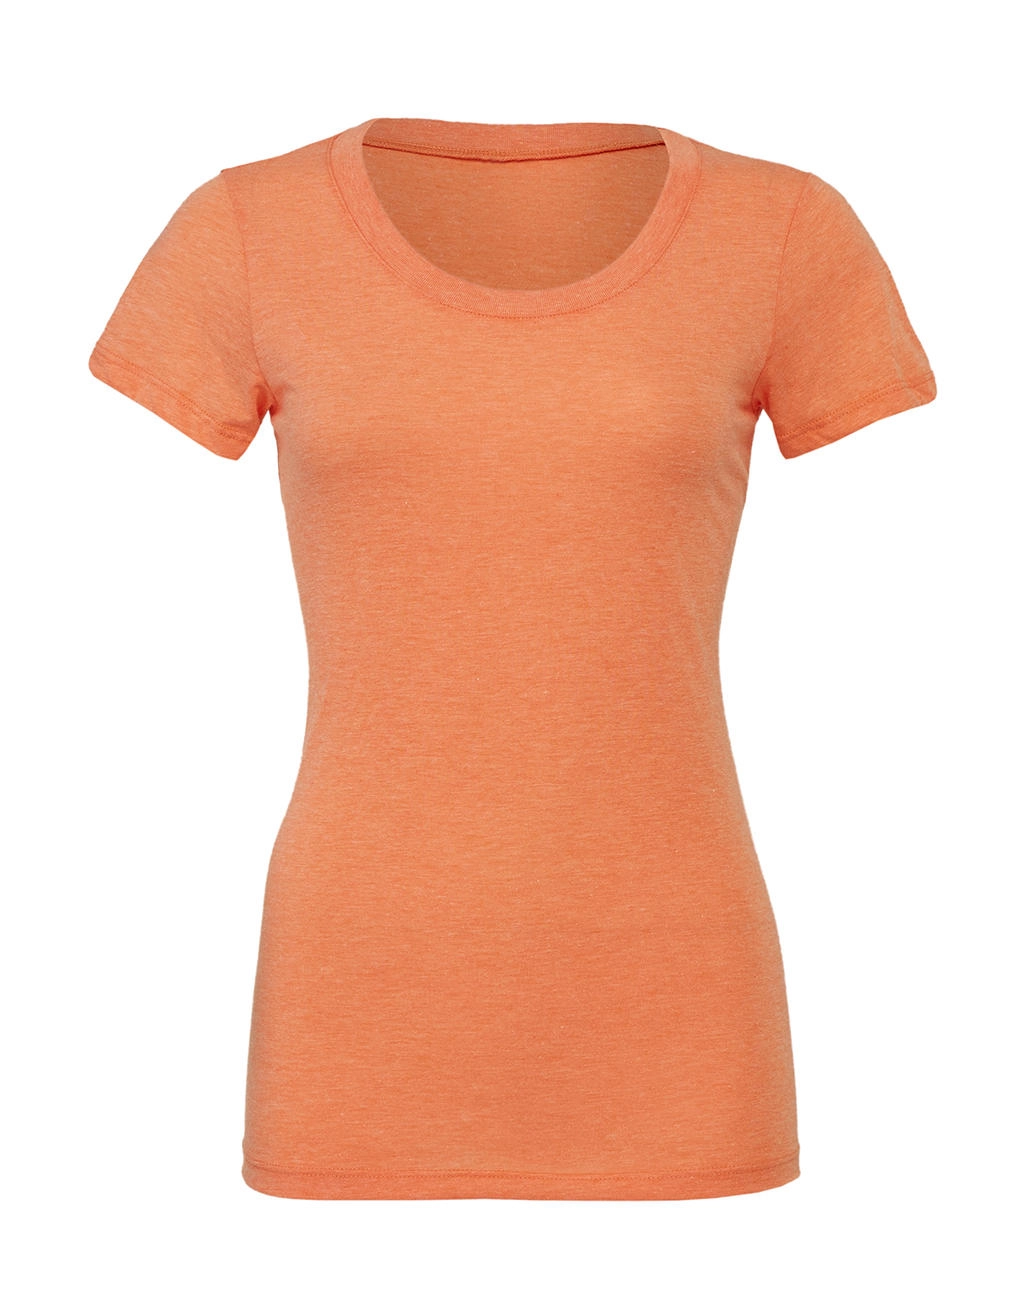 Triblend Crew Neck T-Shirt zum Besticken und Bedrucken in der Farbe Orange Triblend mit Ihren Logo, Schriftzug oder Motiv.